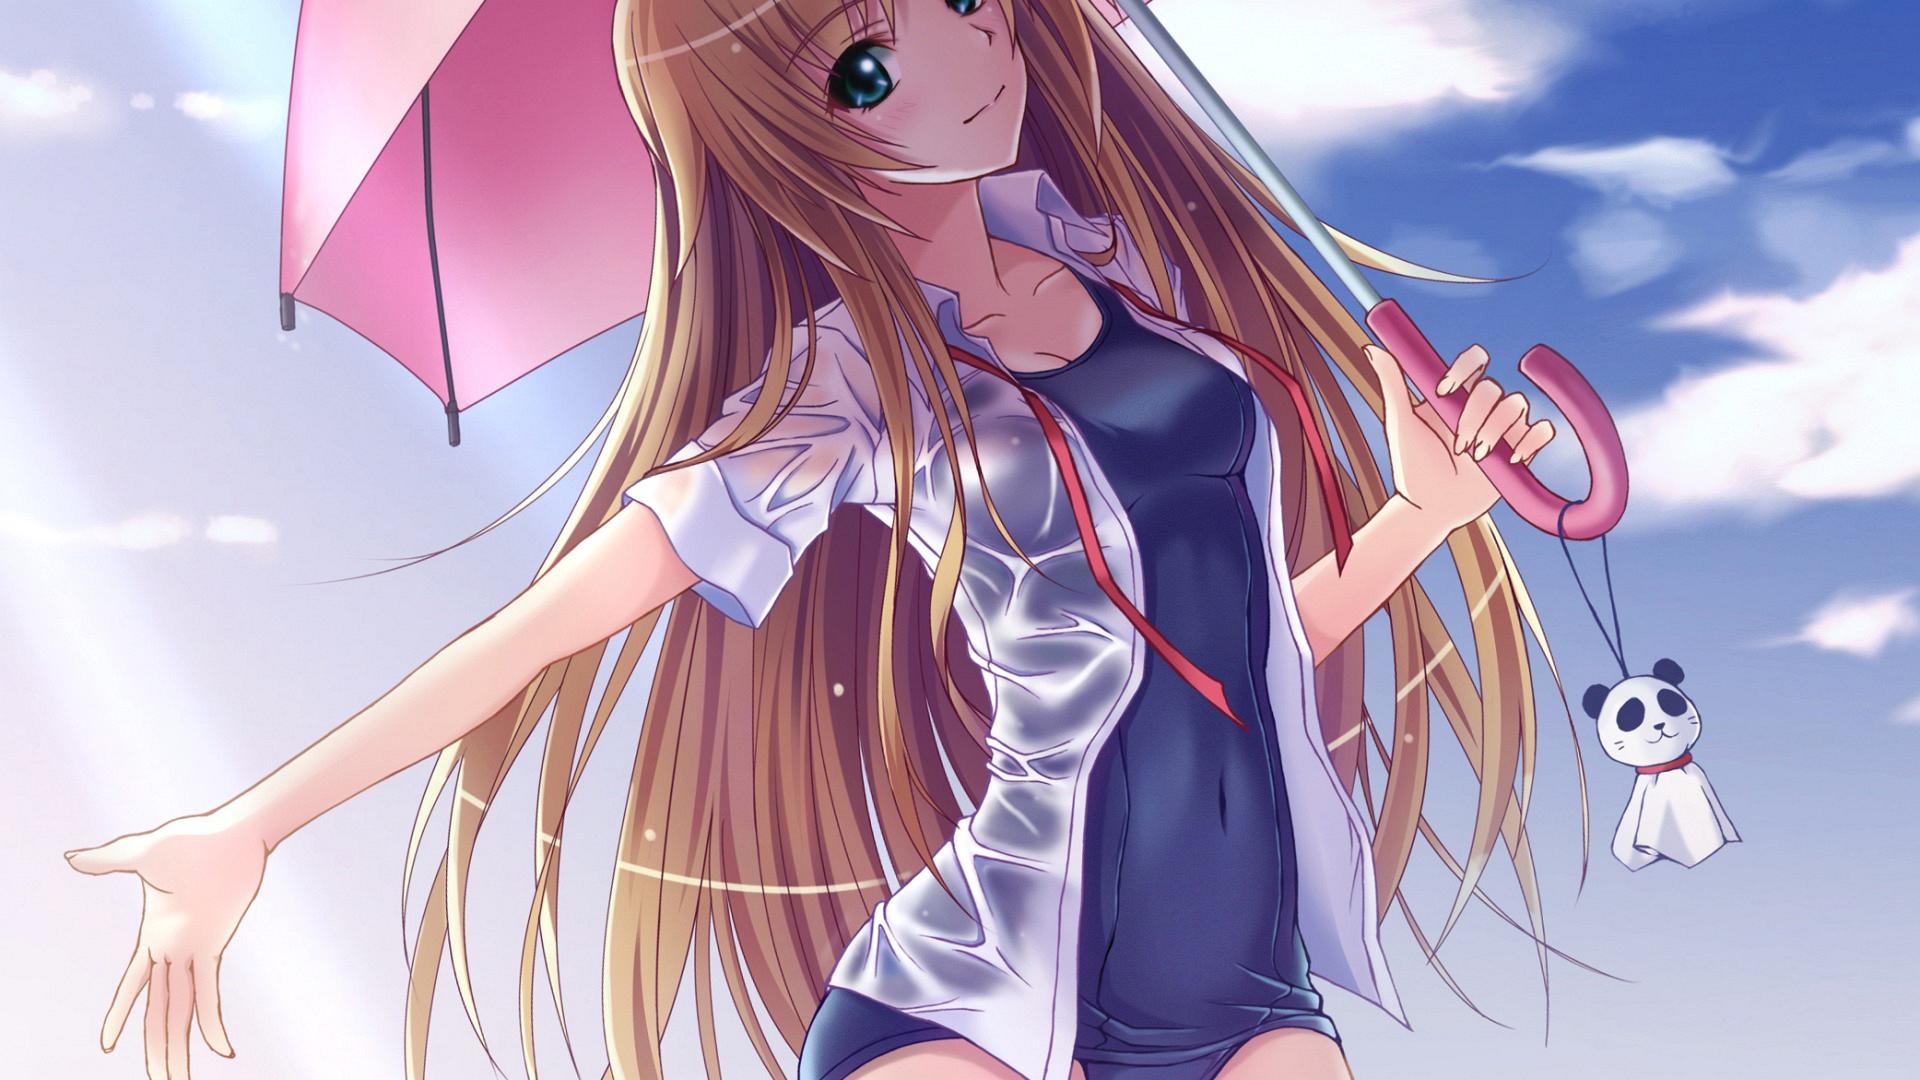 Anime Girl Wallpaper Hd Free Download gambar ke 7